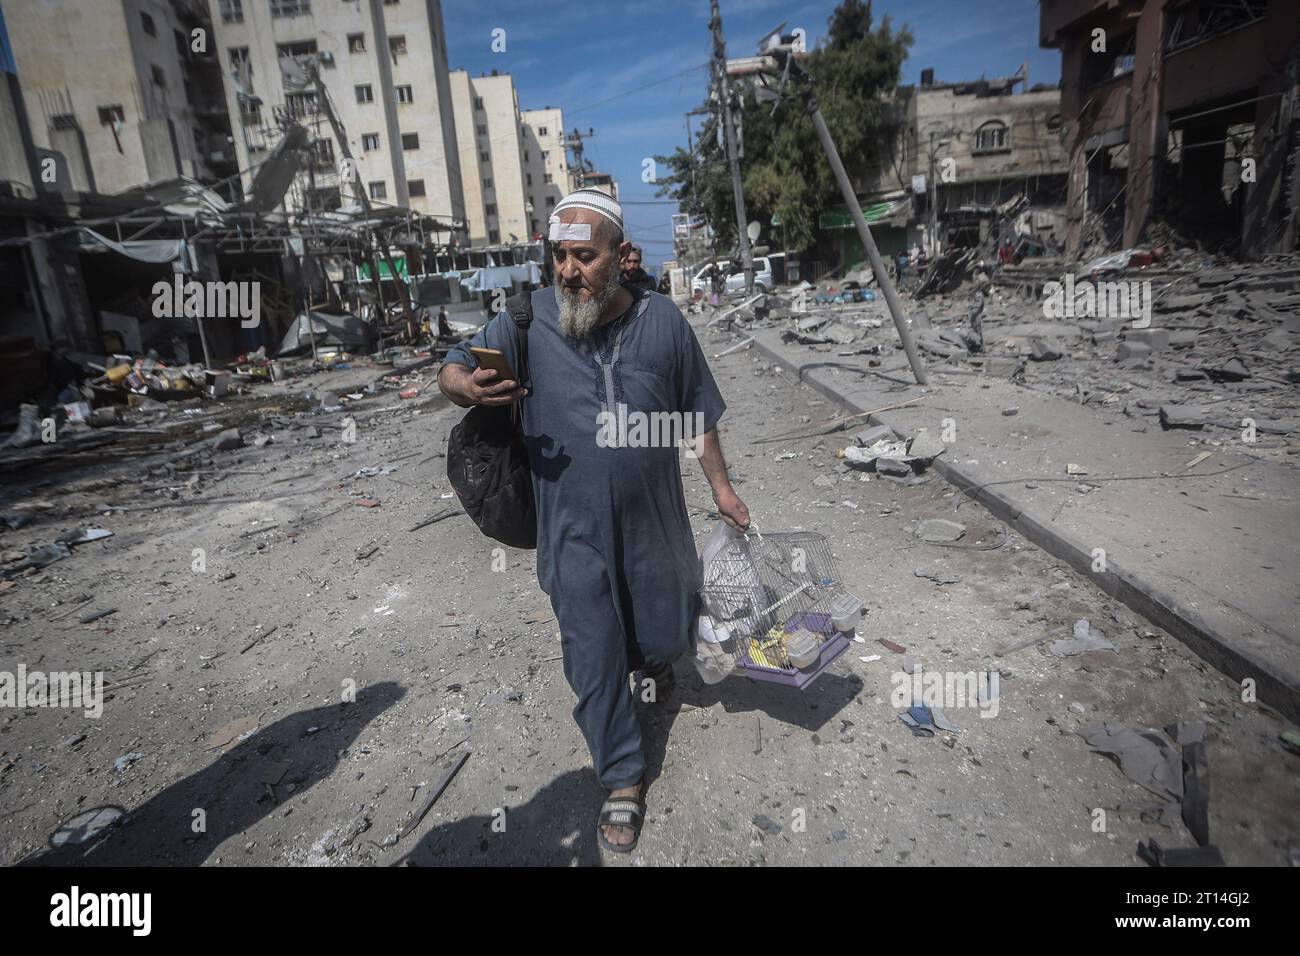 Gaza-Stadt, Palästinensische Gebiete. Oktober 2023. Ein Palästinenser läuft mit seinen Hausvögeln durch eine verwüstete Straße nach dem israelischen Bombenanschlag auf das Viertel Karama in Gaza-Stadt. Quelle: Mohammed Talatene/dpa/Alamy Live News Stockfoto